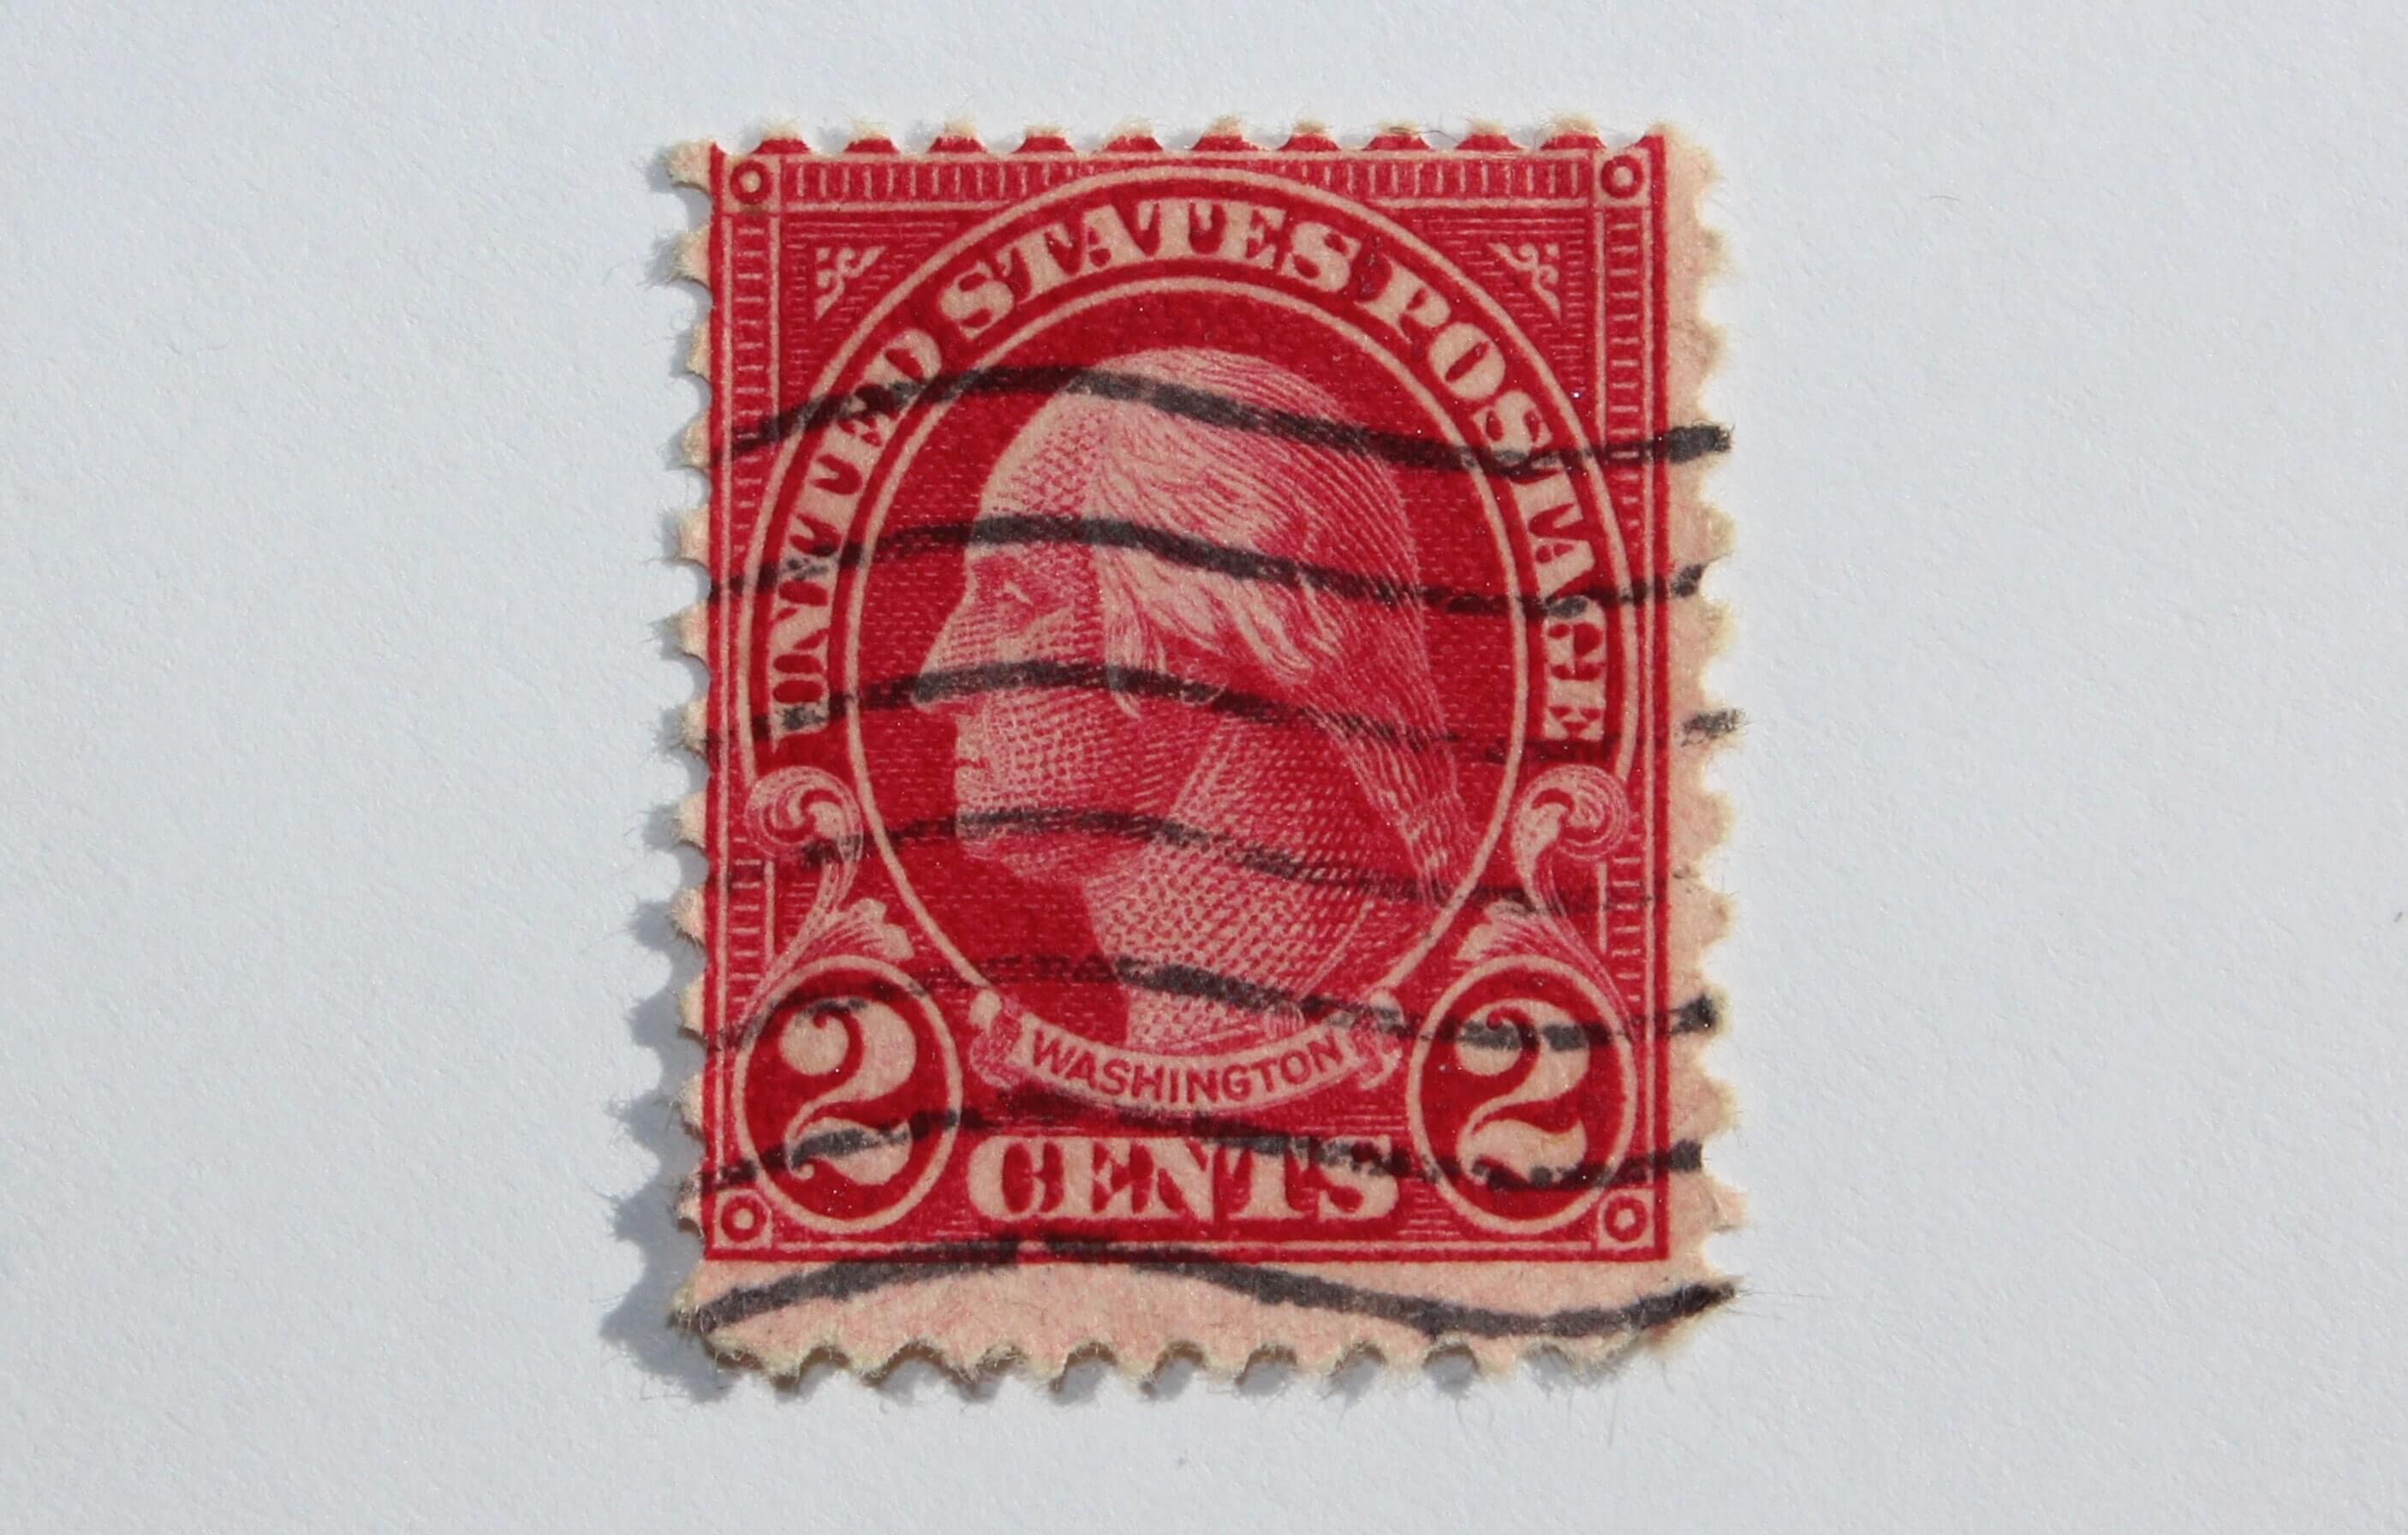 Poštová známka - 2 centy